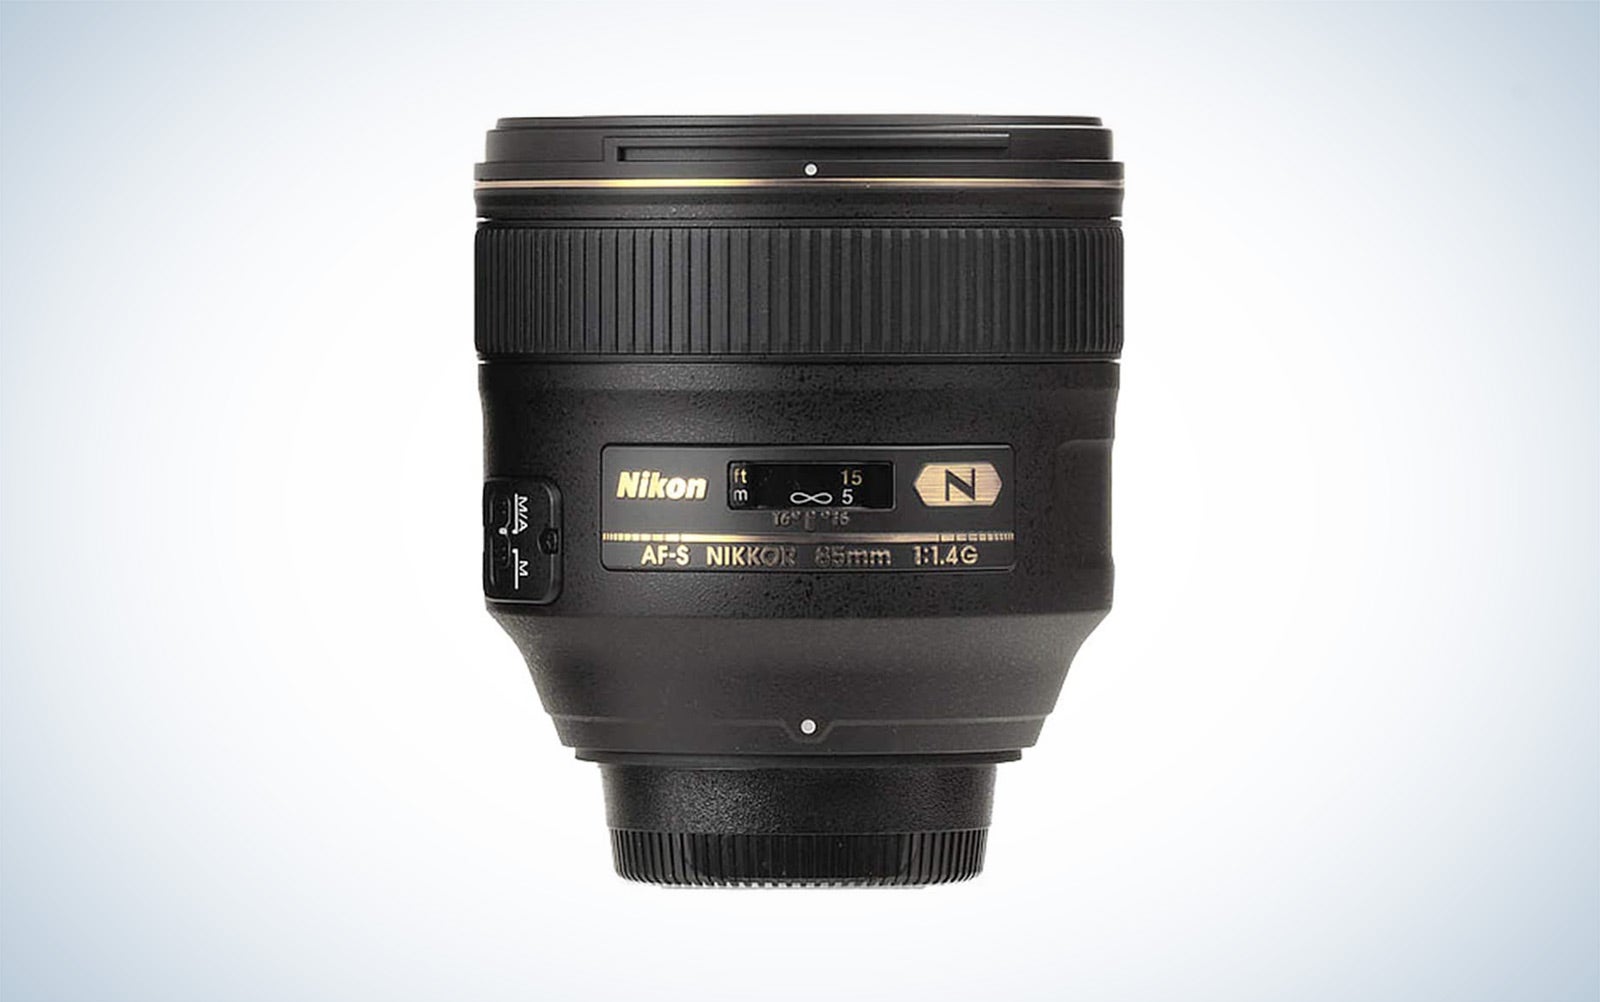 The best classic portrait lens for Nikon DSLRs is the Nikon AF-S FX NIKKOR 85mm f/1.4G Lens.